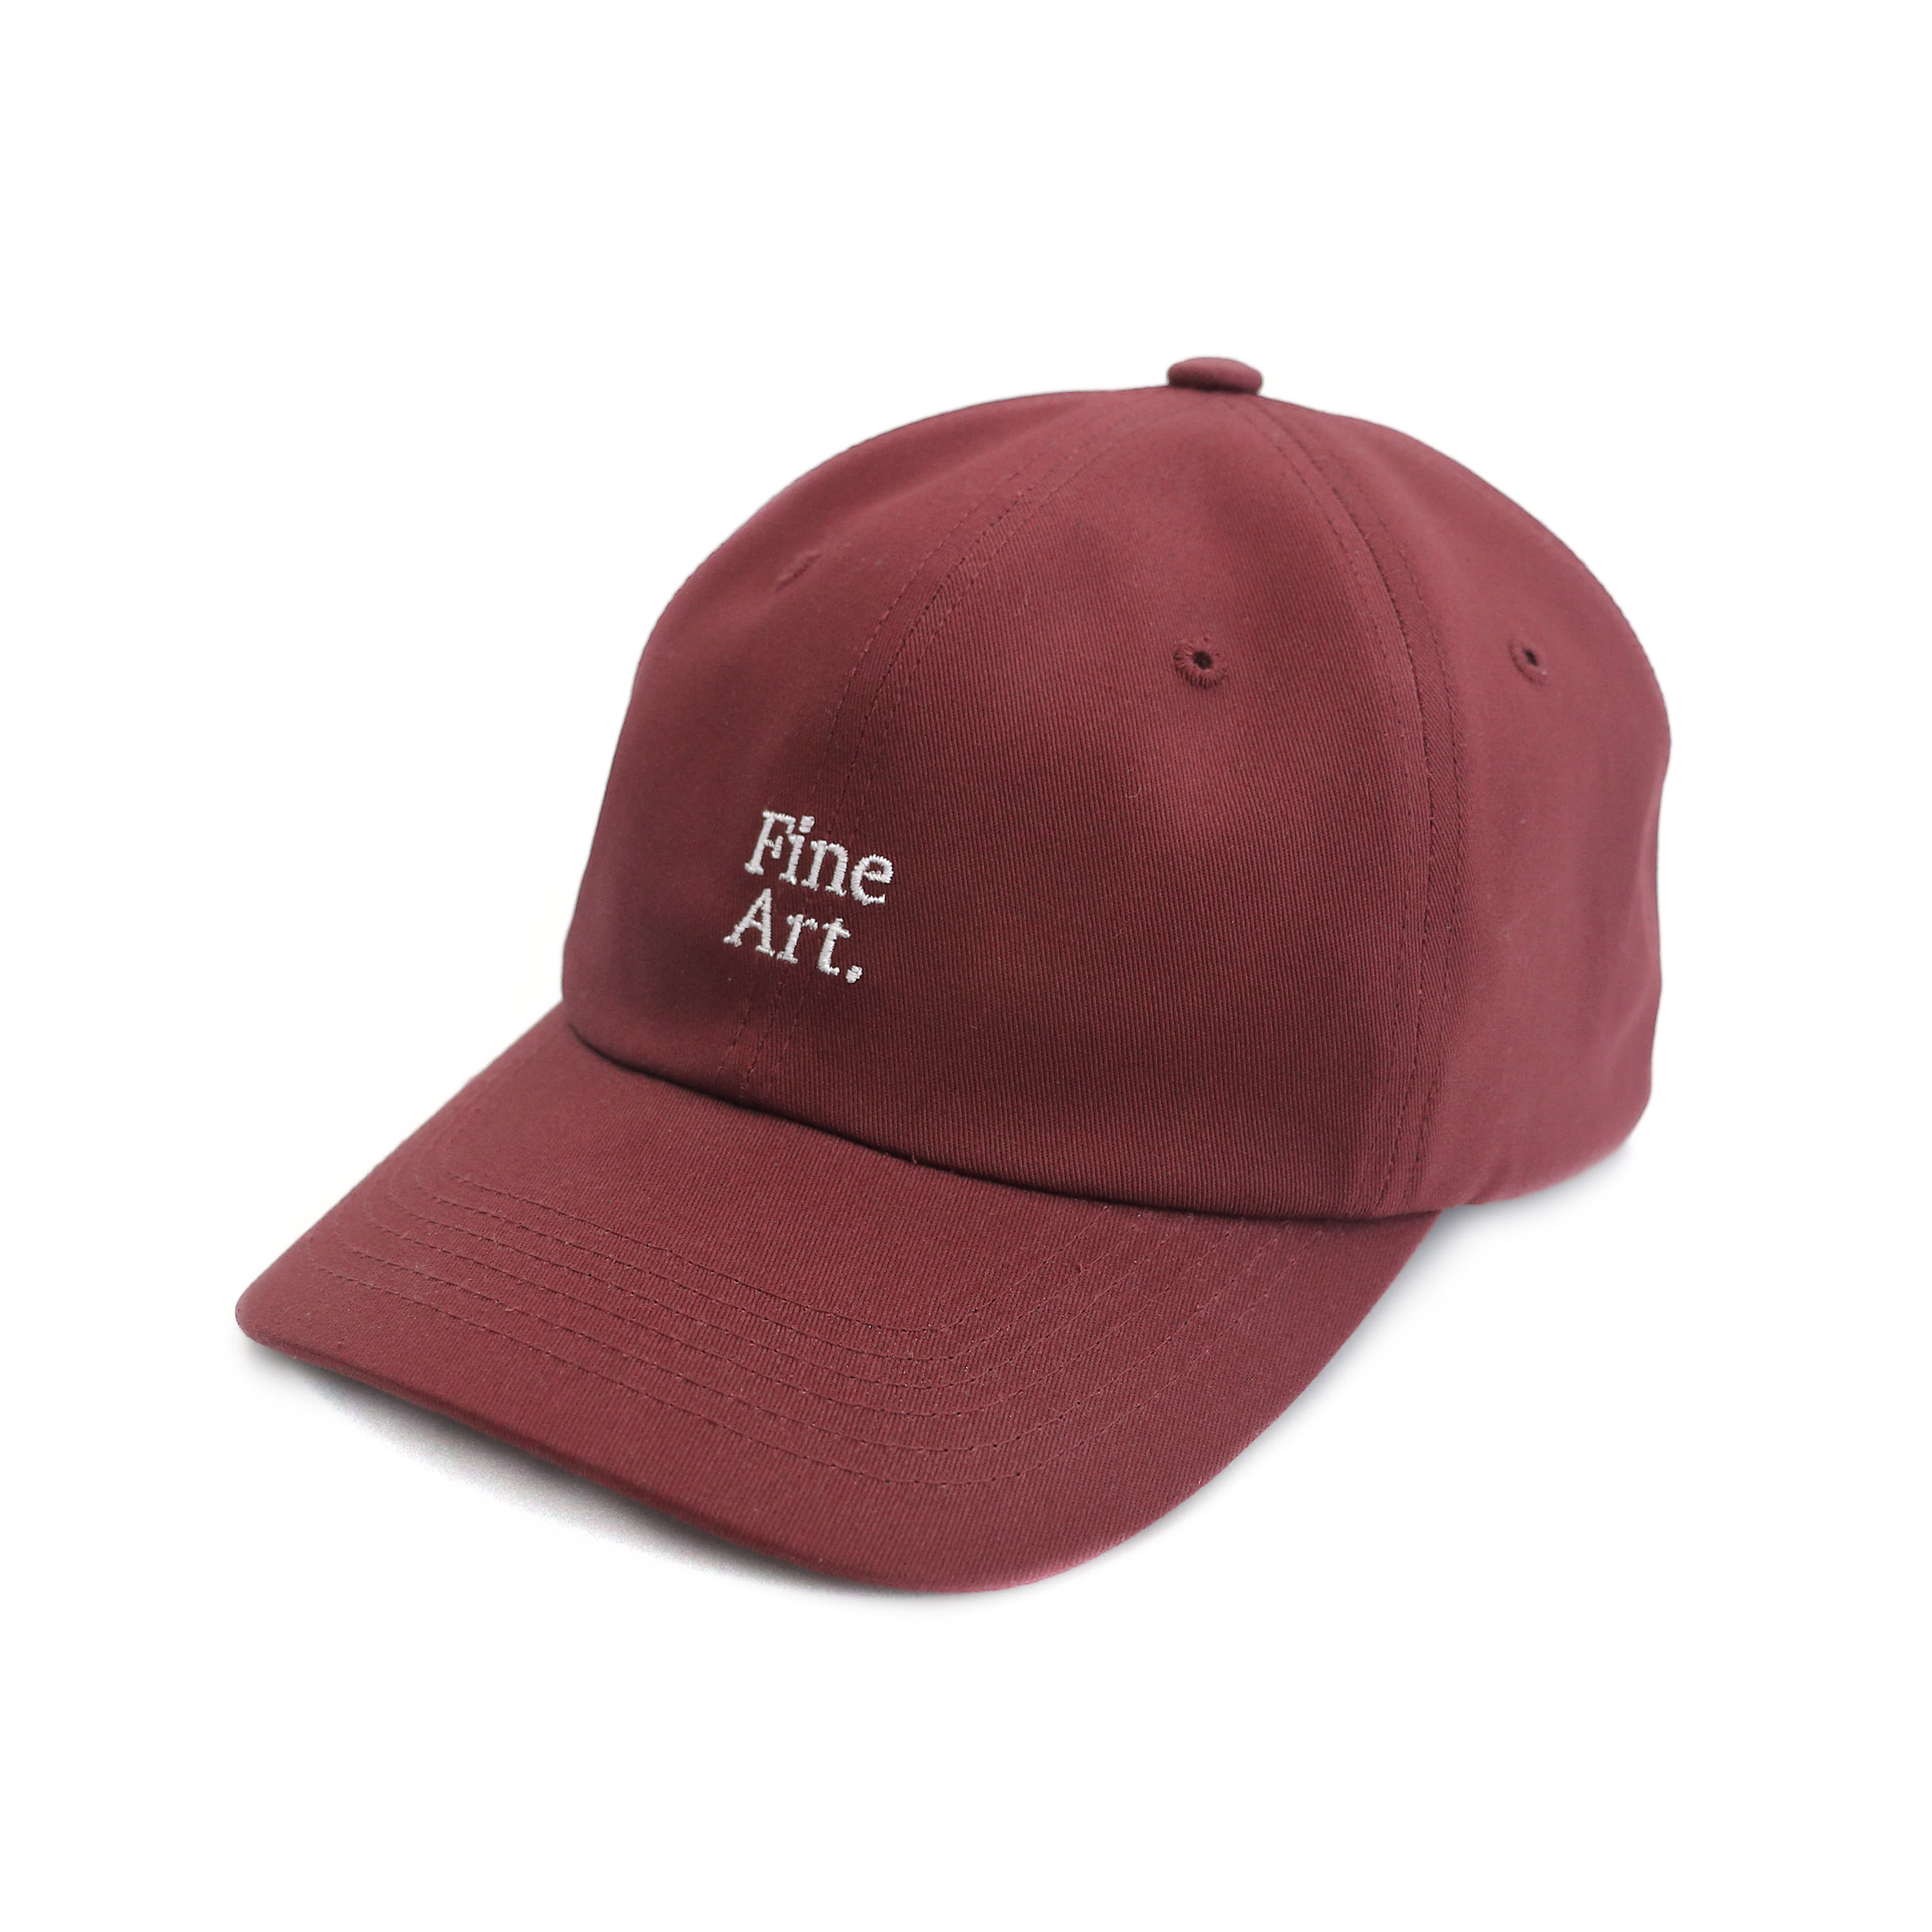 Fine Art cap